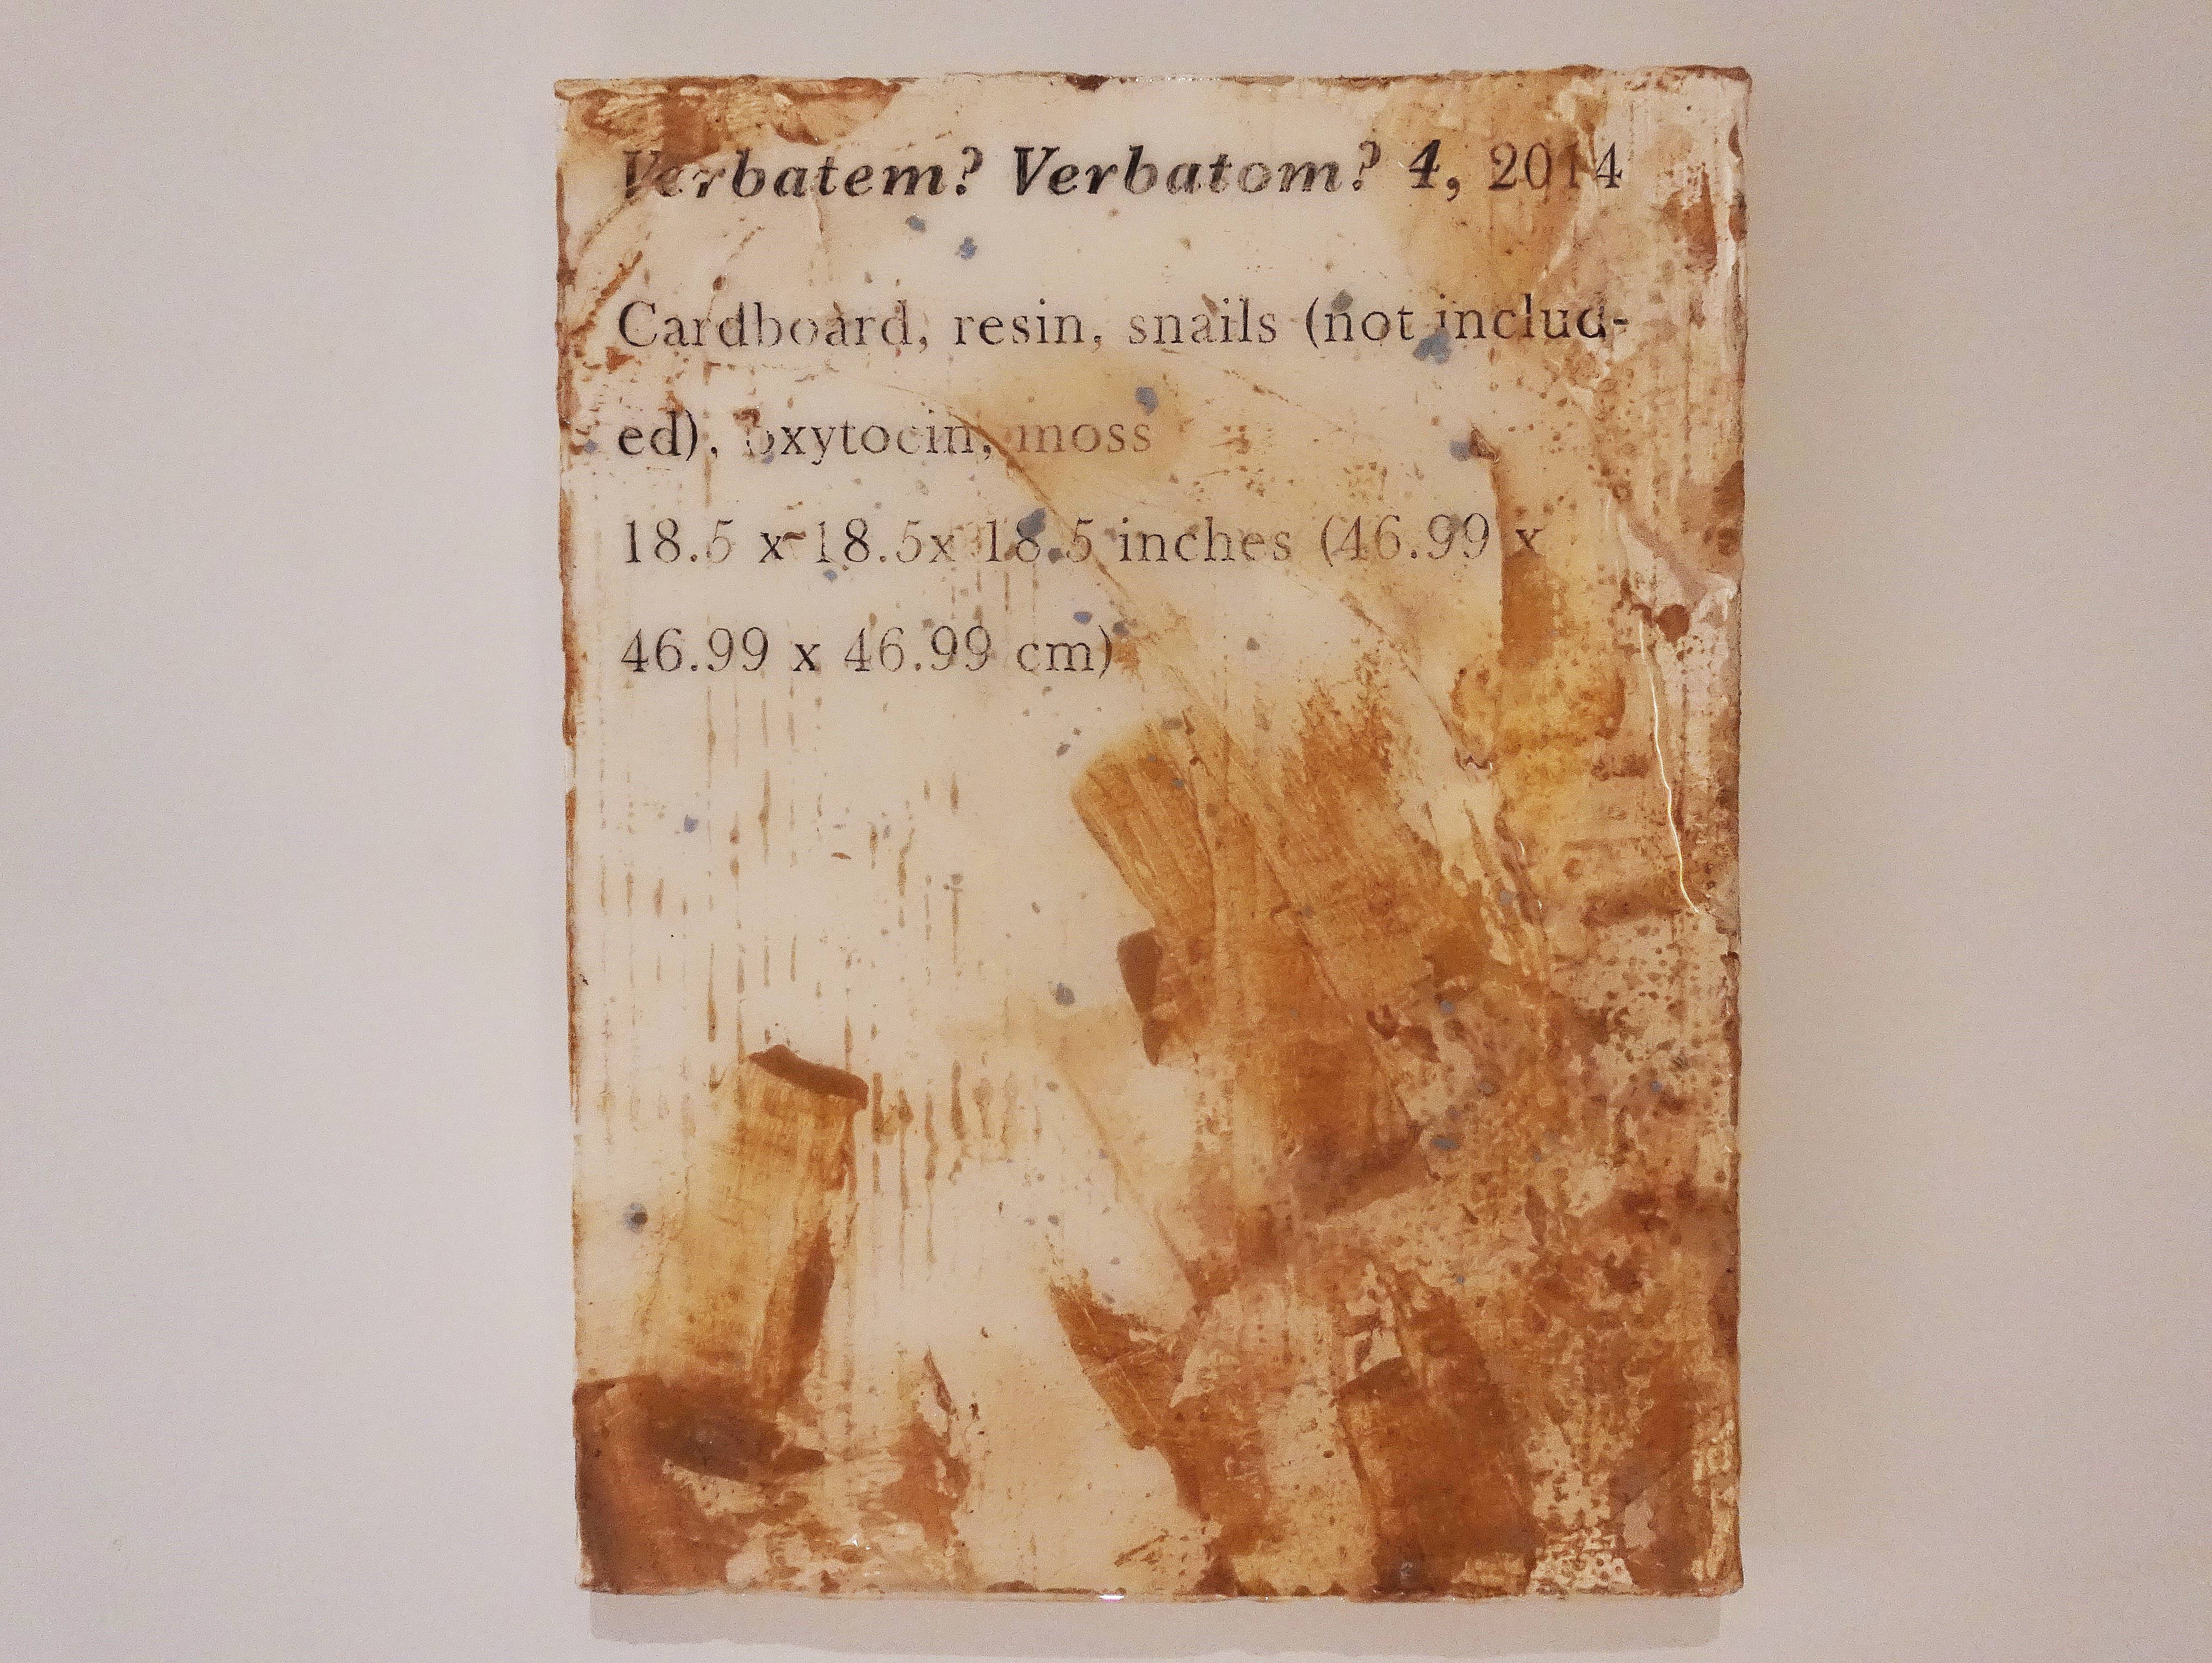 羅智信，《Verbatem?verbatom?4》，27 x 35 cm，畫布、碳粉、樹脂、威爾剛、蝸牛(包含在作品中)，2019。